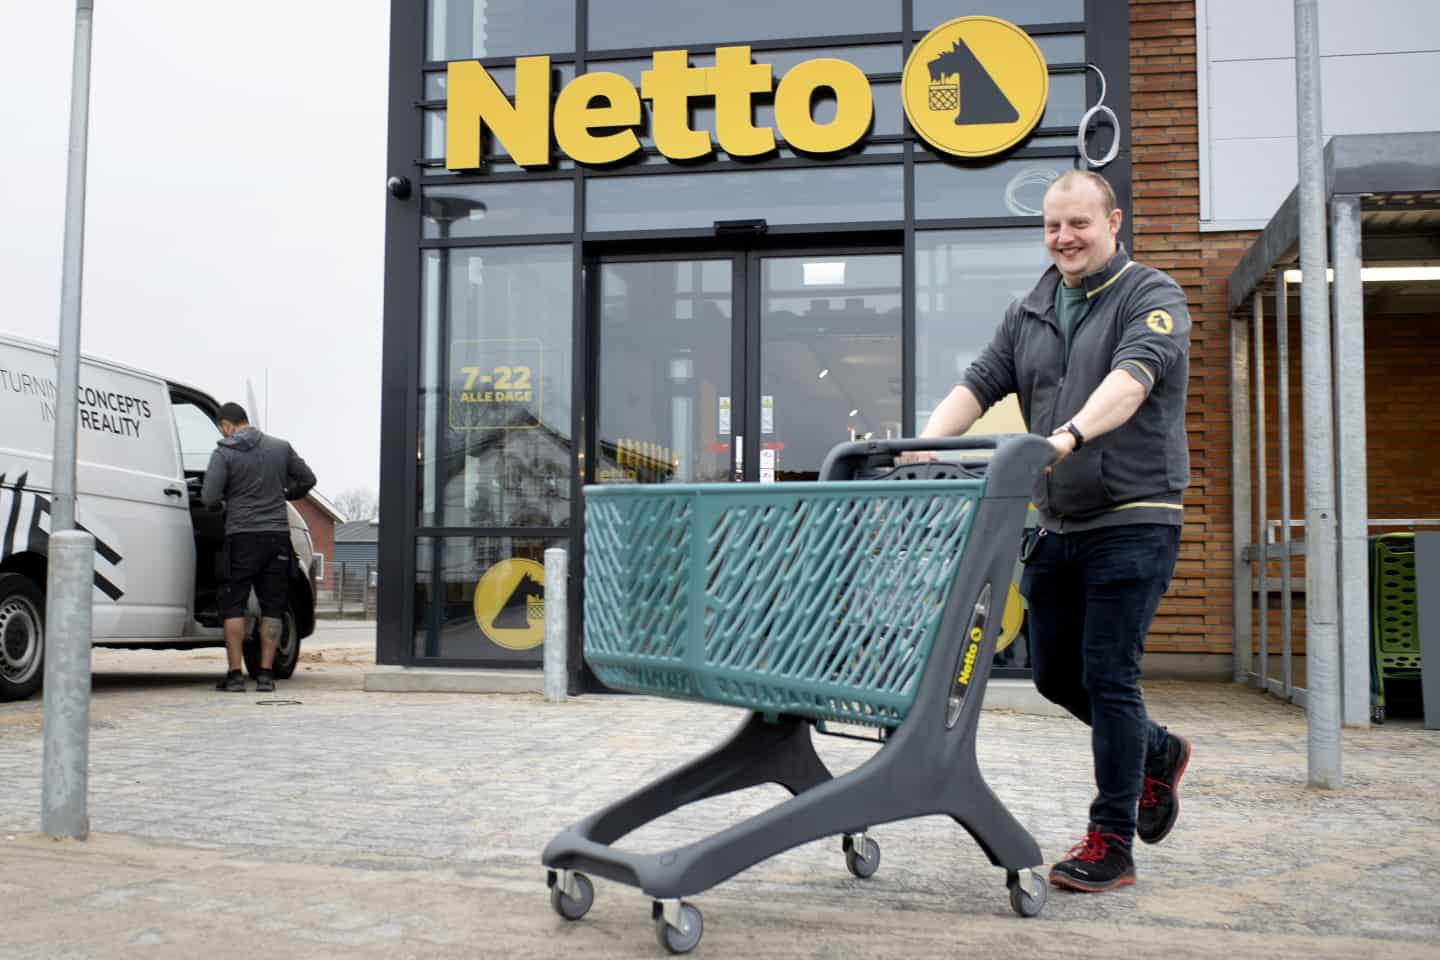 Niels fjerner om Netto: - Du må gerne høje forventninger | jv.dk